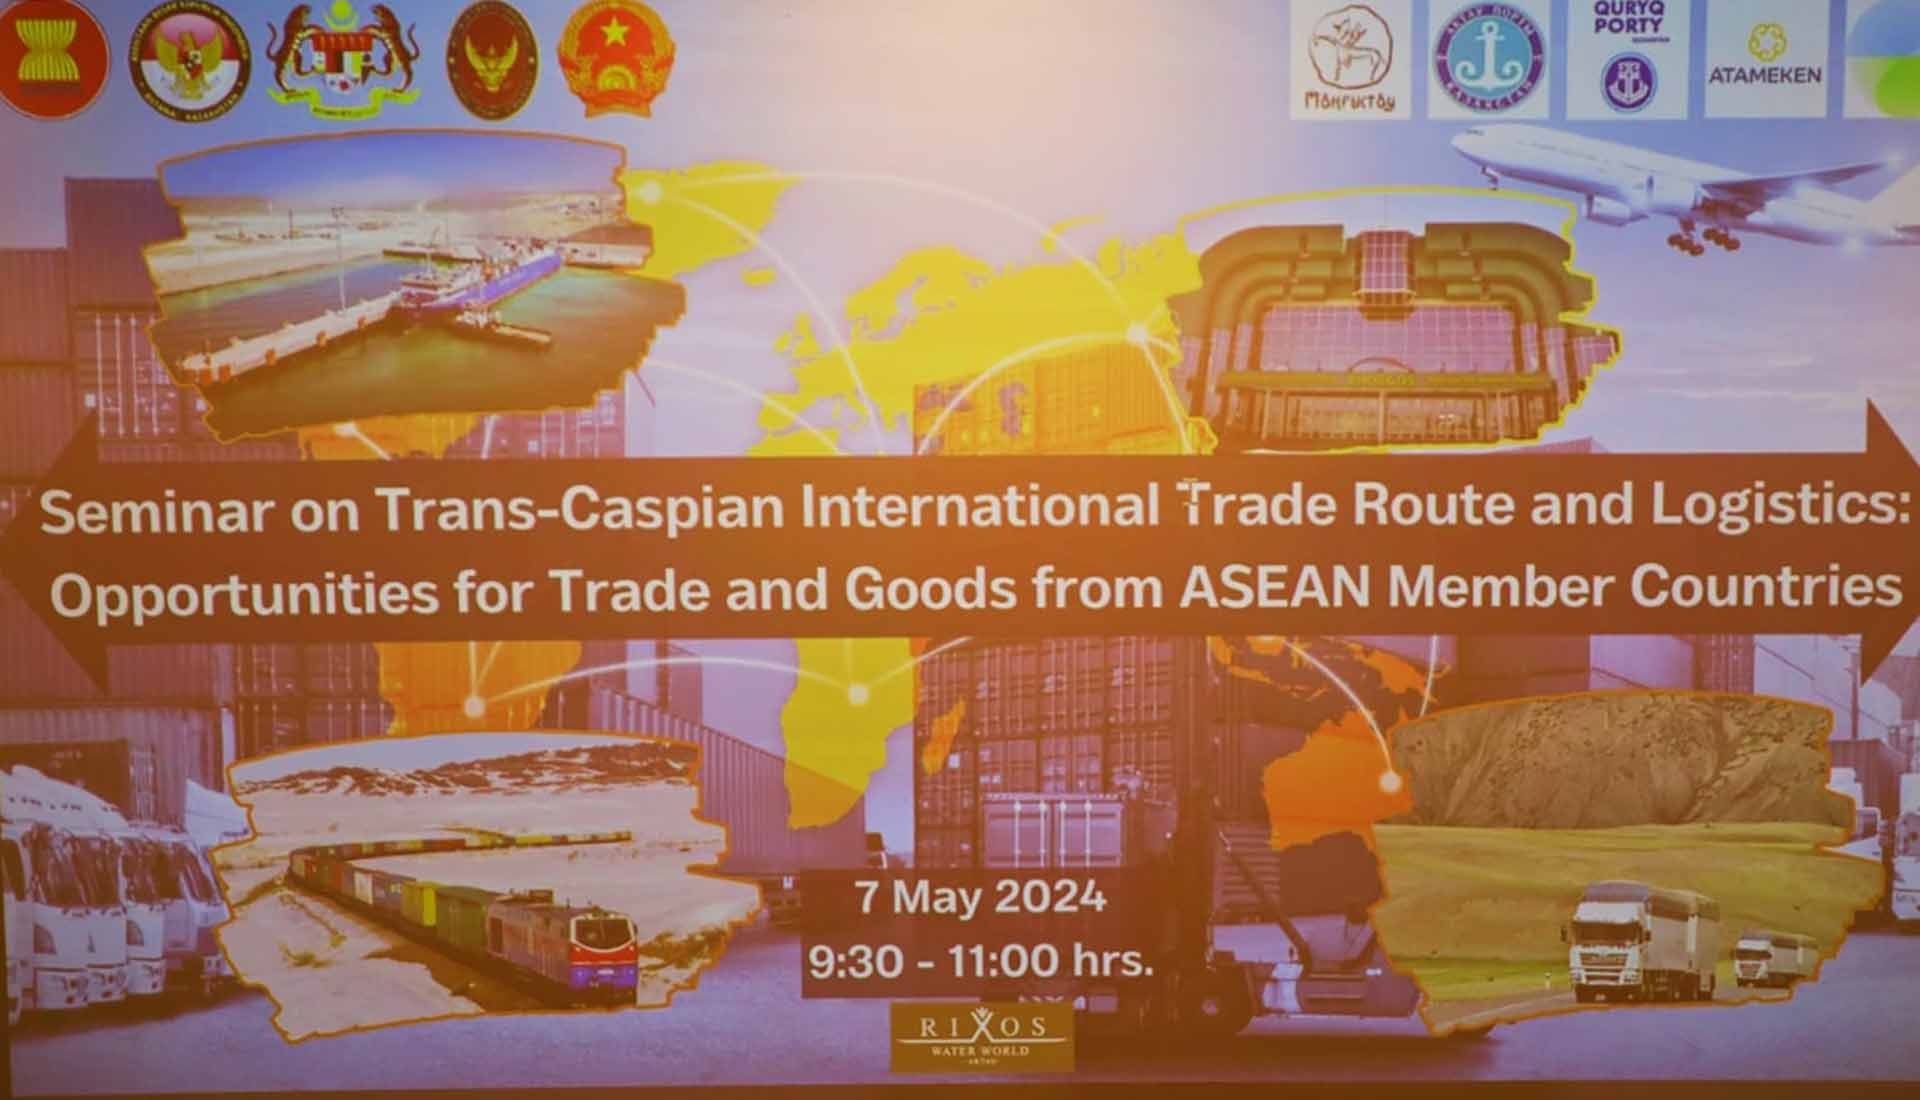 ASEAN quan tâm tuyến đường vận chuyển quốc tế xuyên Caspi